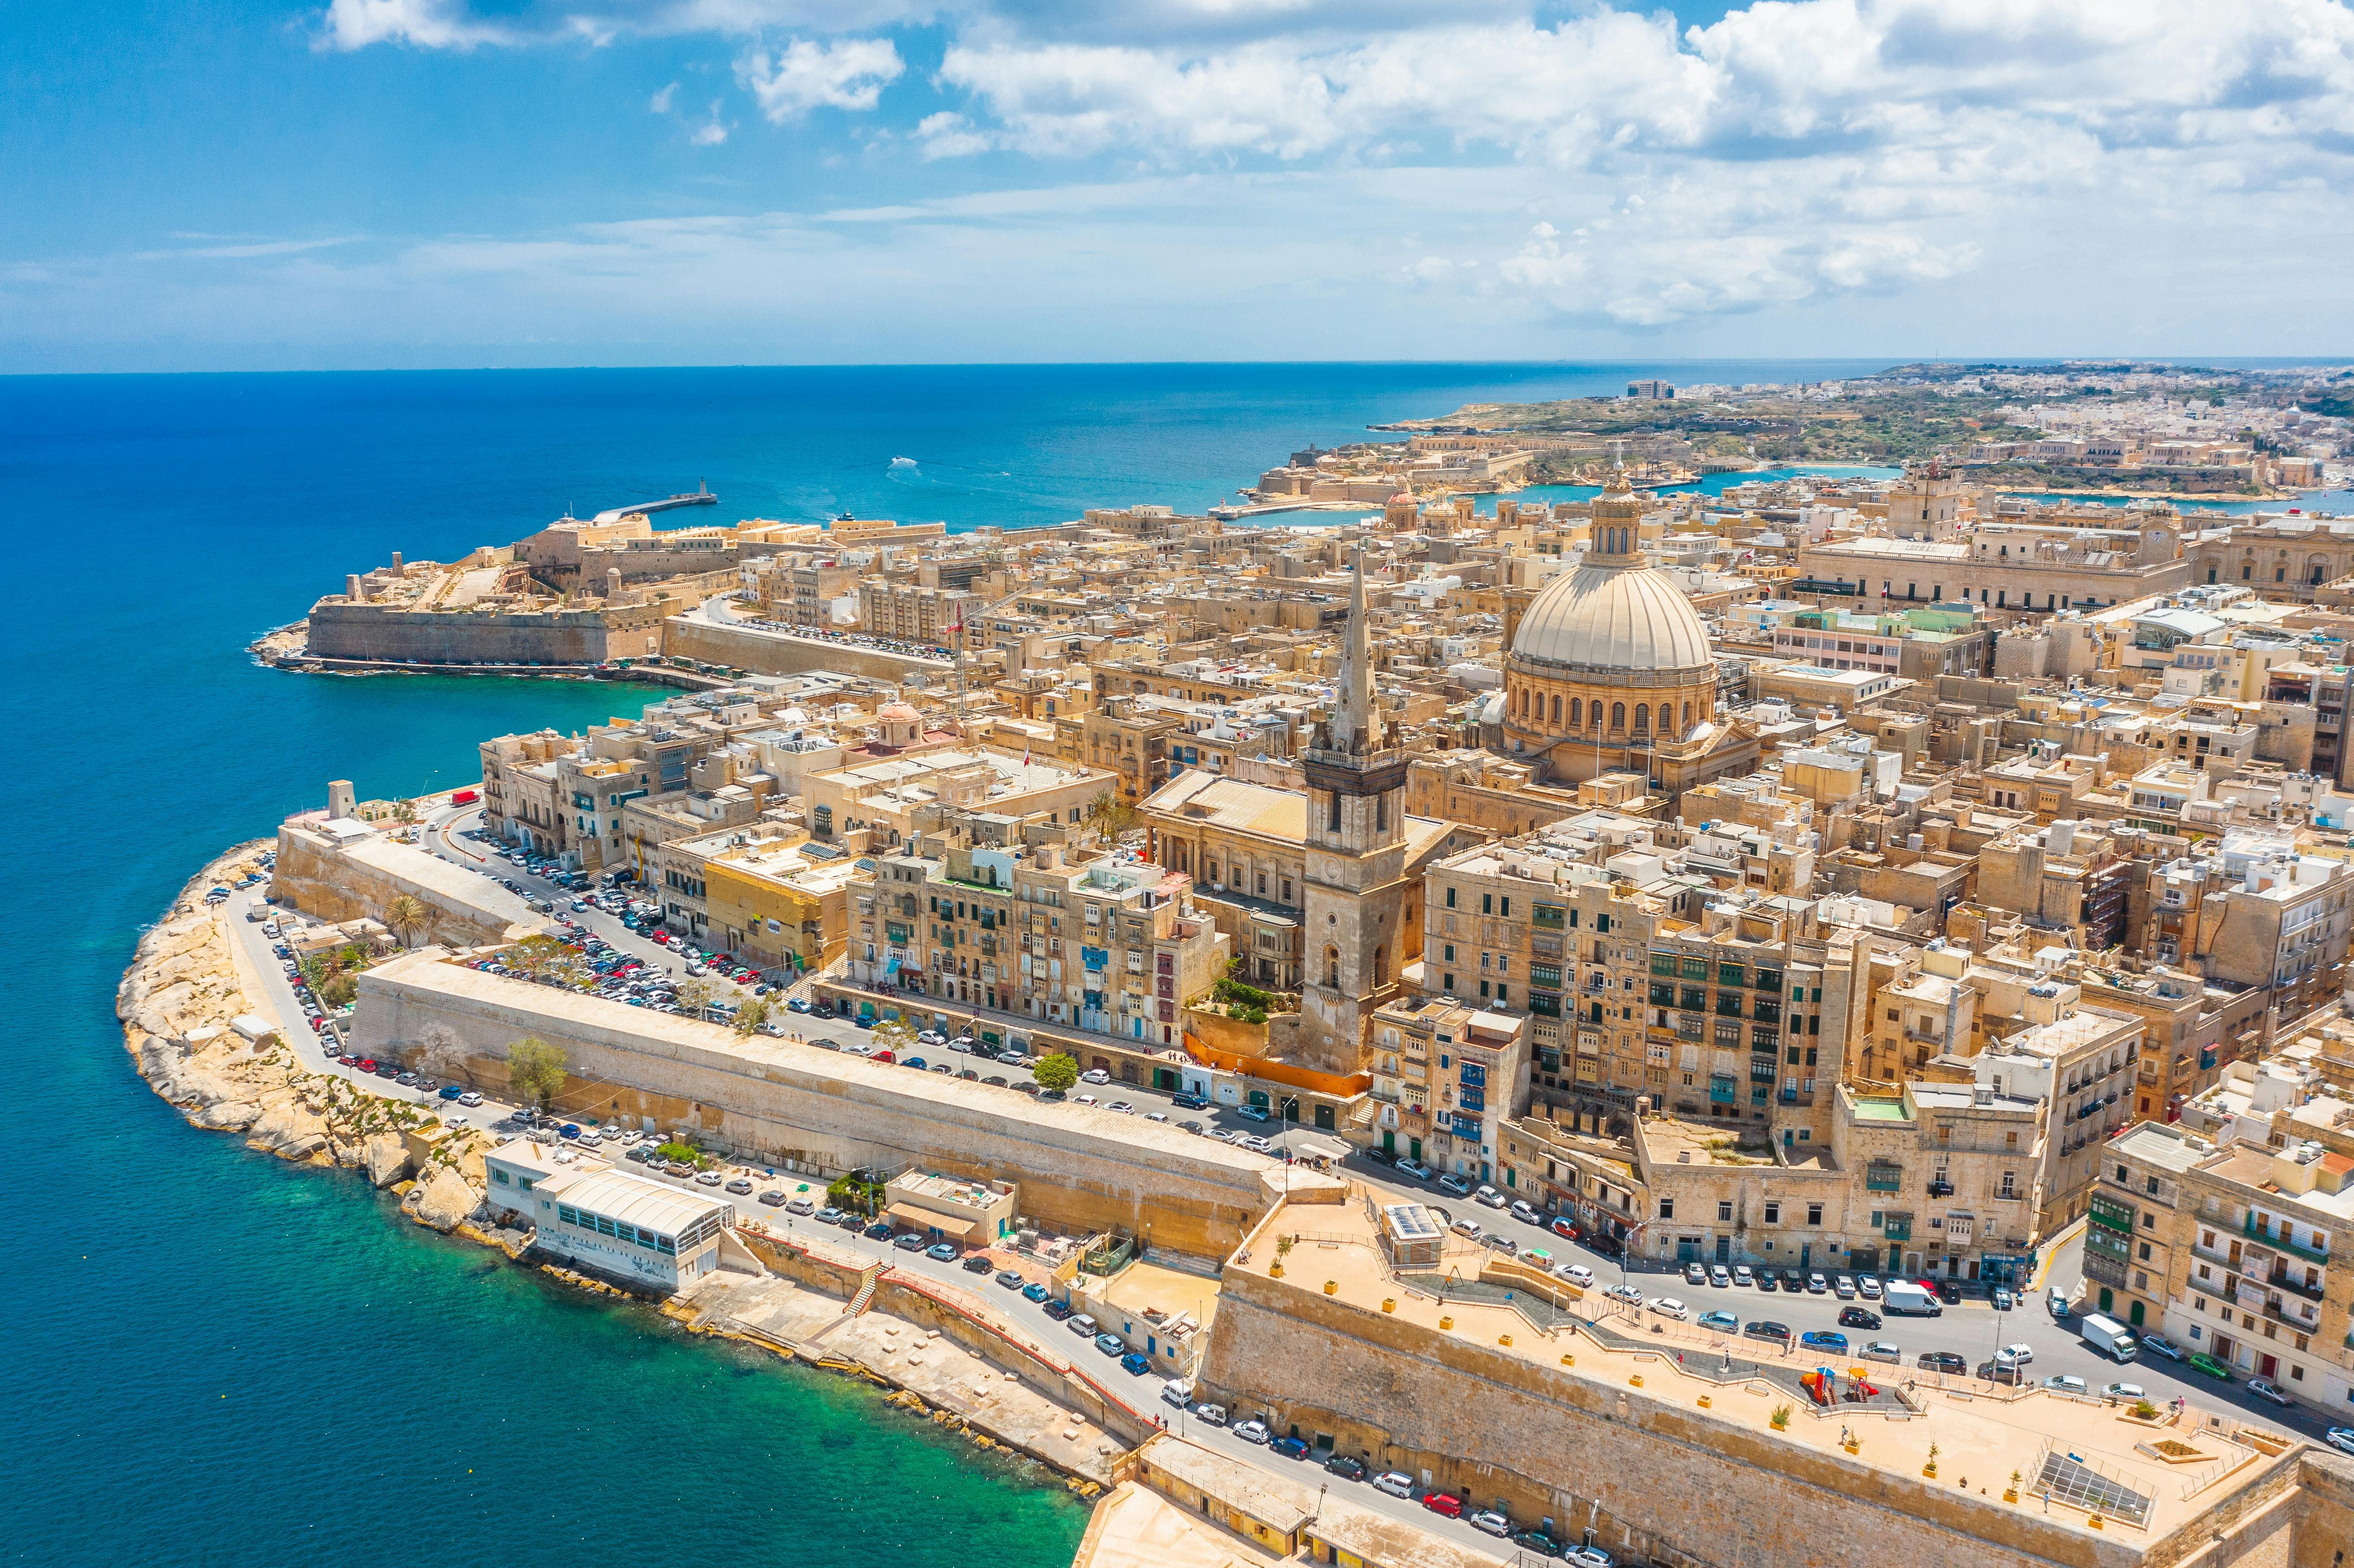 Rundgang durch Valletta mit der St. John's Co-Cathedral